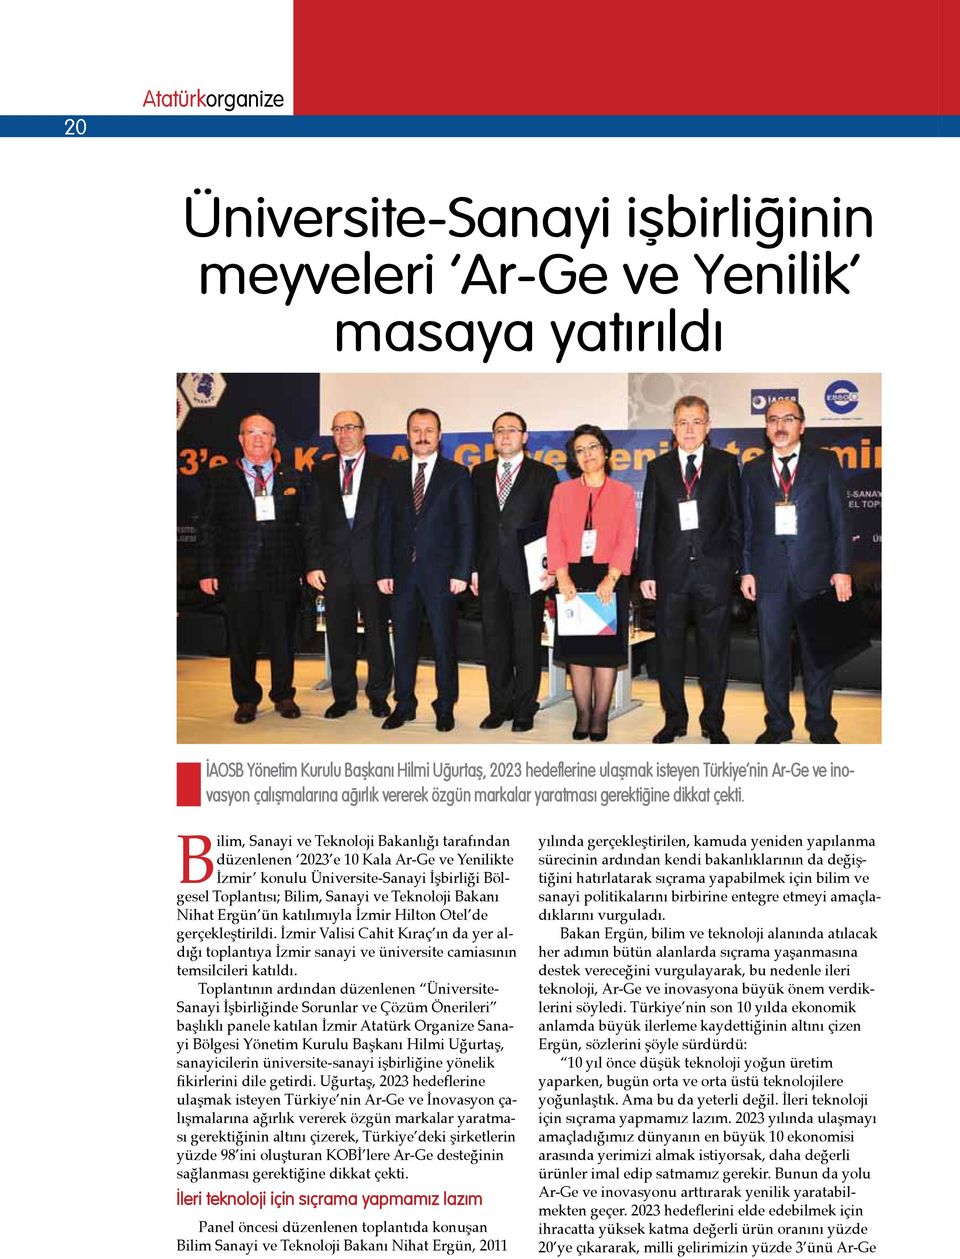 Bilim, Sanayi ve Teknoloji Bakanlığı tarafından düzenlenen 2023 e 10 Kala Ar-Ge ve Yenilikte İzmir konulu Üniversite-Sanayi İşbirliği Bölgesel Toplantısı; Bilim, Sanayi ve Teknoloji Bakanı Nihat